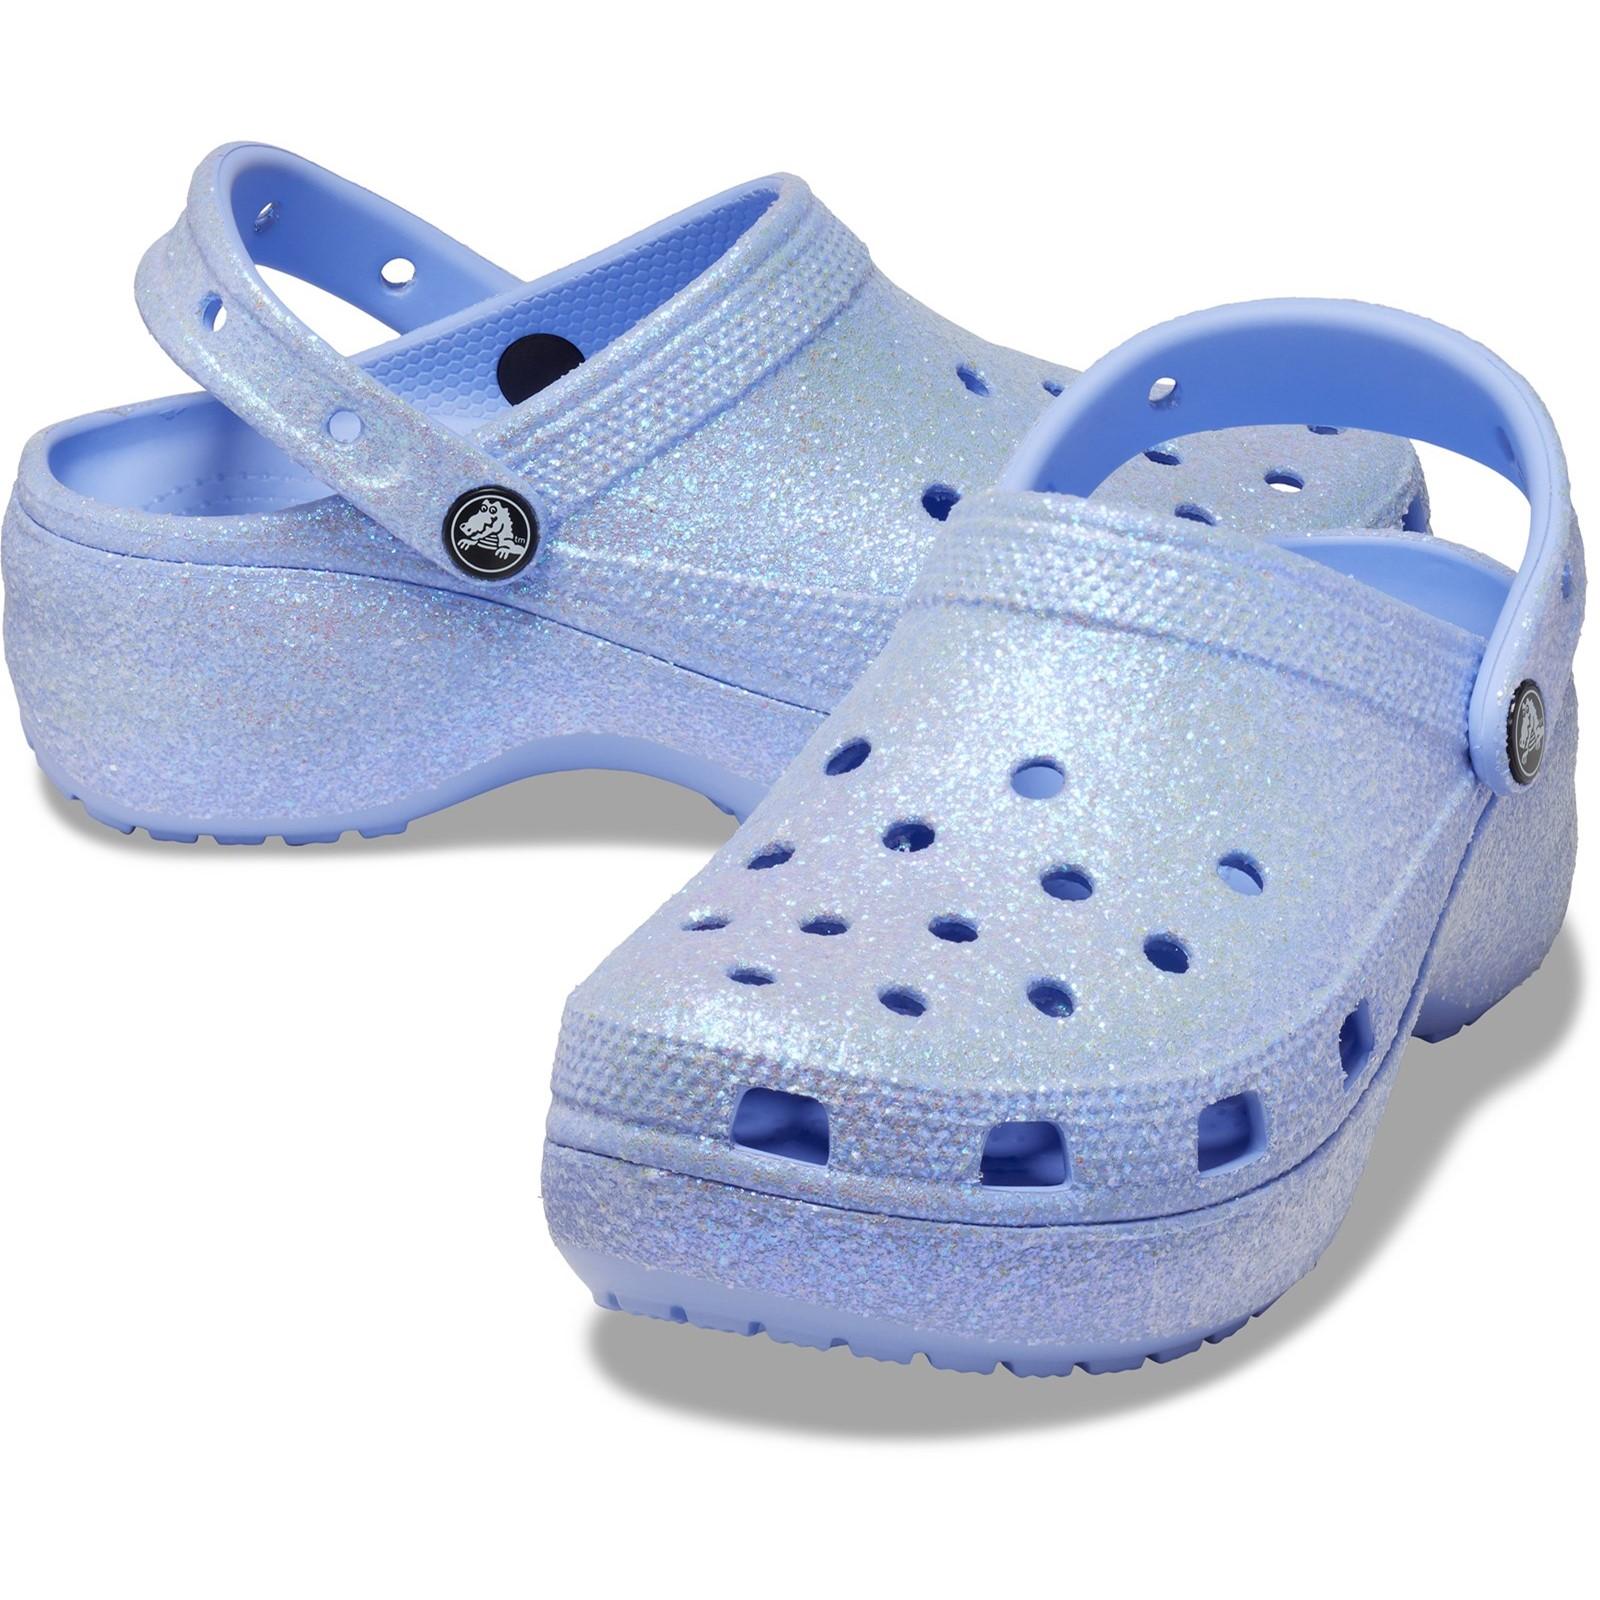 Crocs Classic Platform Glitter Clog Sandals